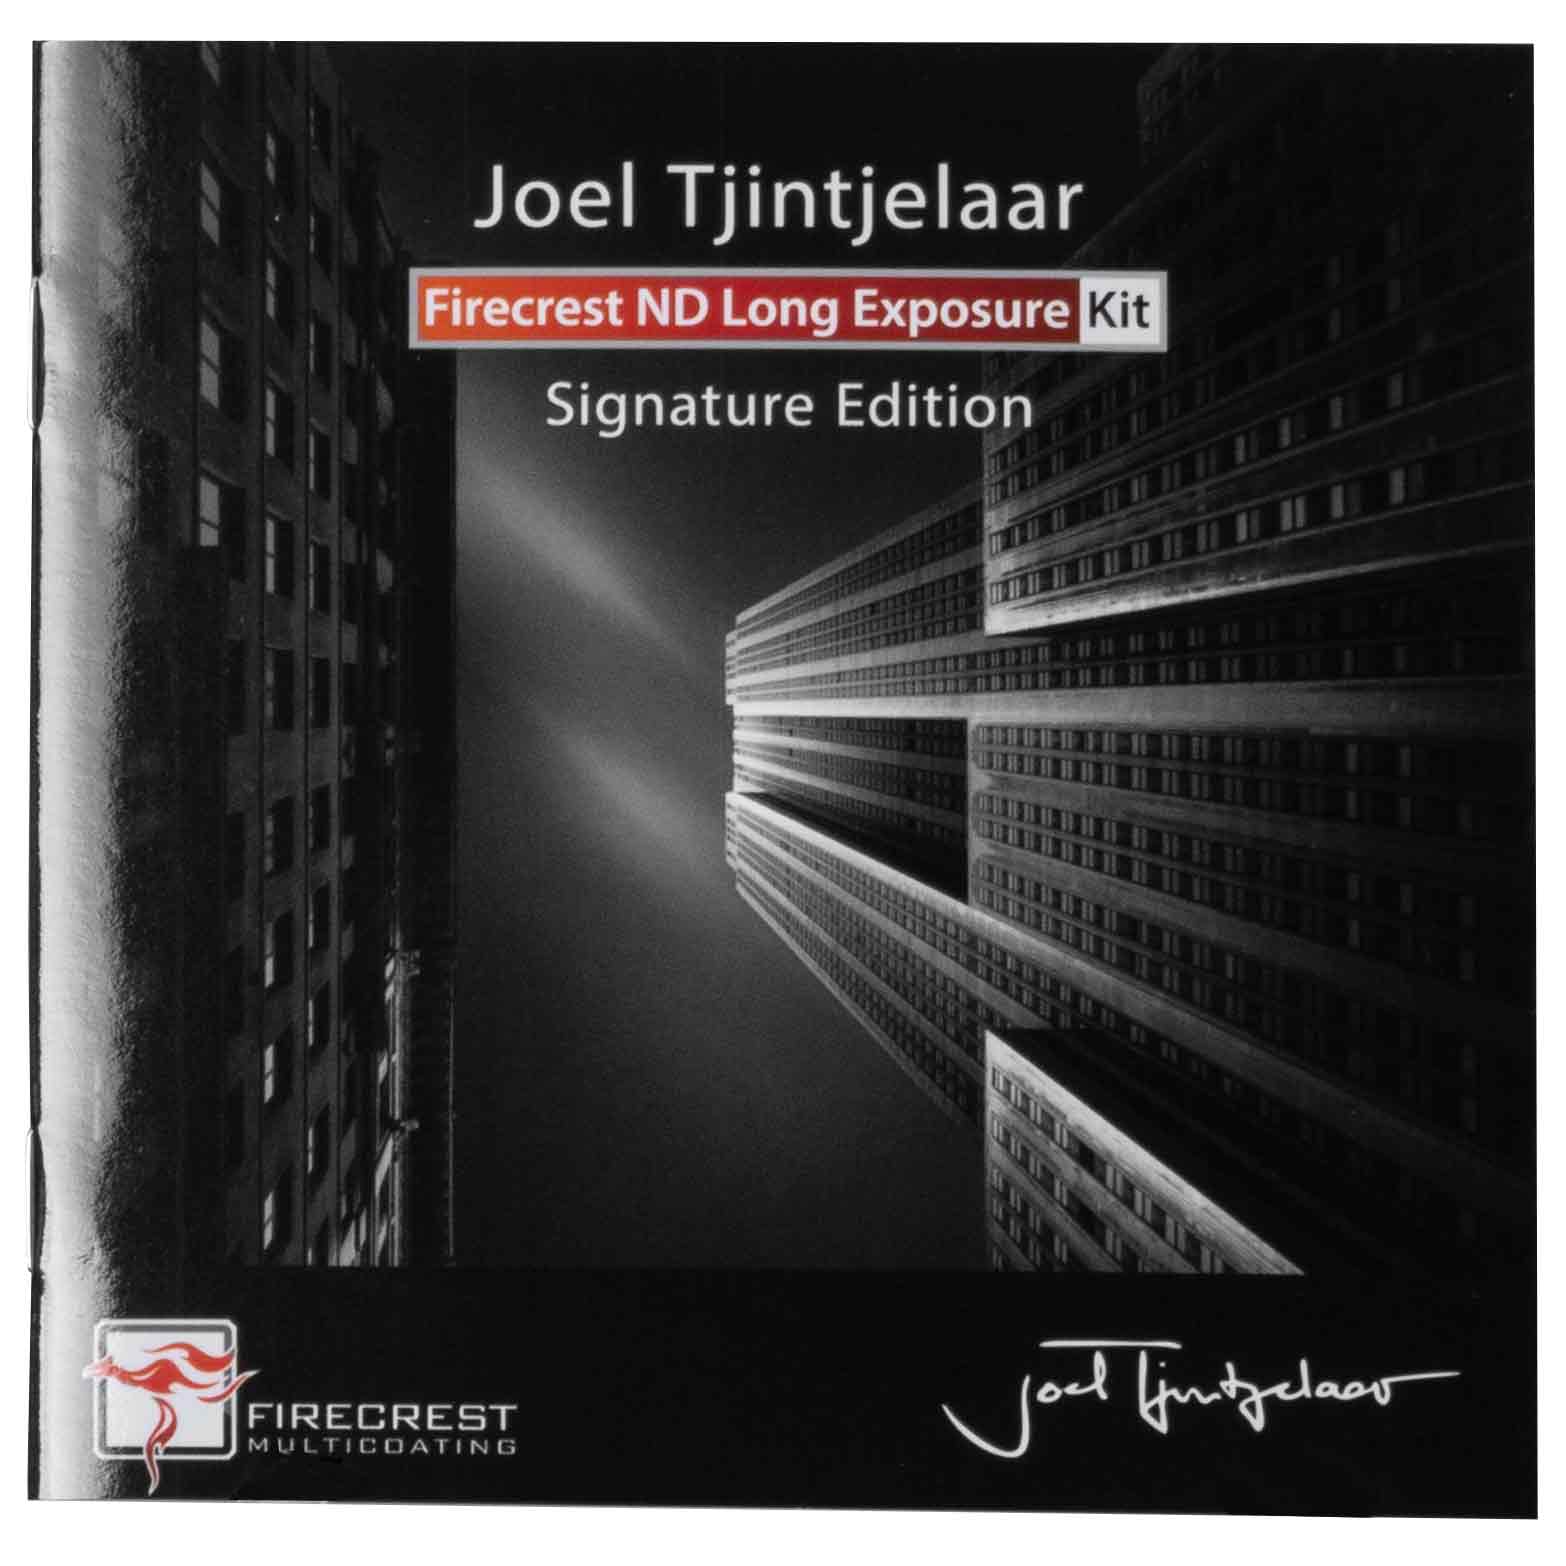 Firecrest Long Exposure Kit #1 by Joel Tjintjelaar